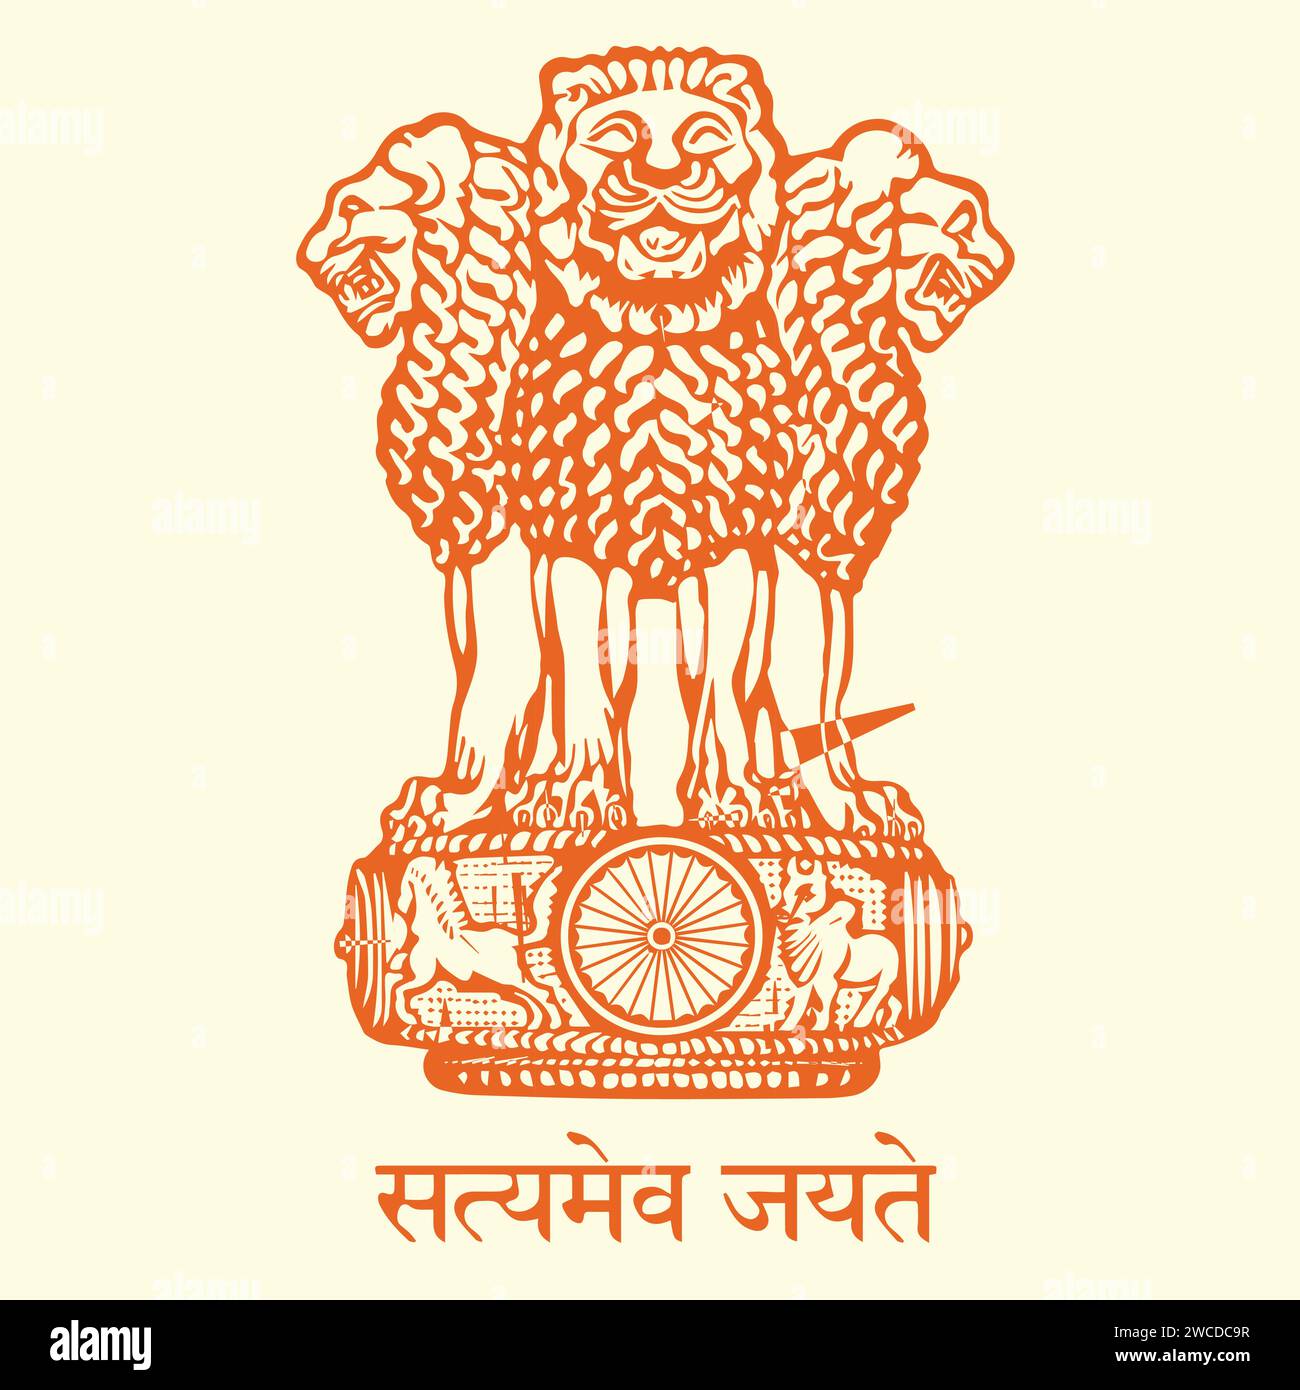 Vektor-Illustration der Flagge und des Ashoka-Emblems von Indien Stock Vektor